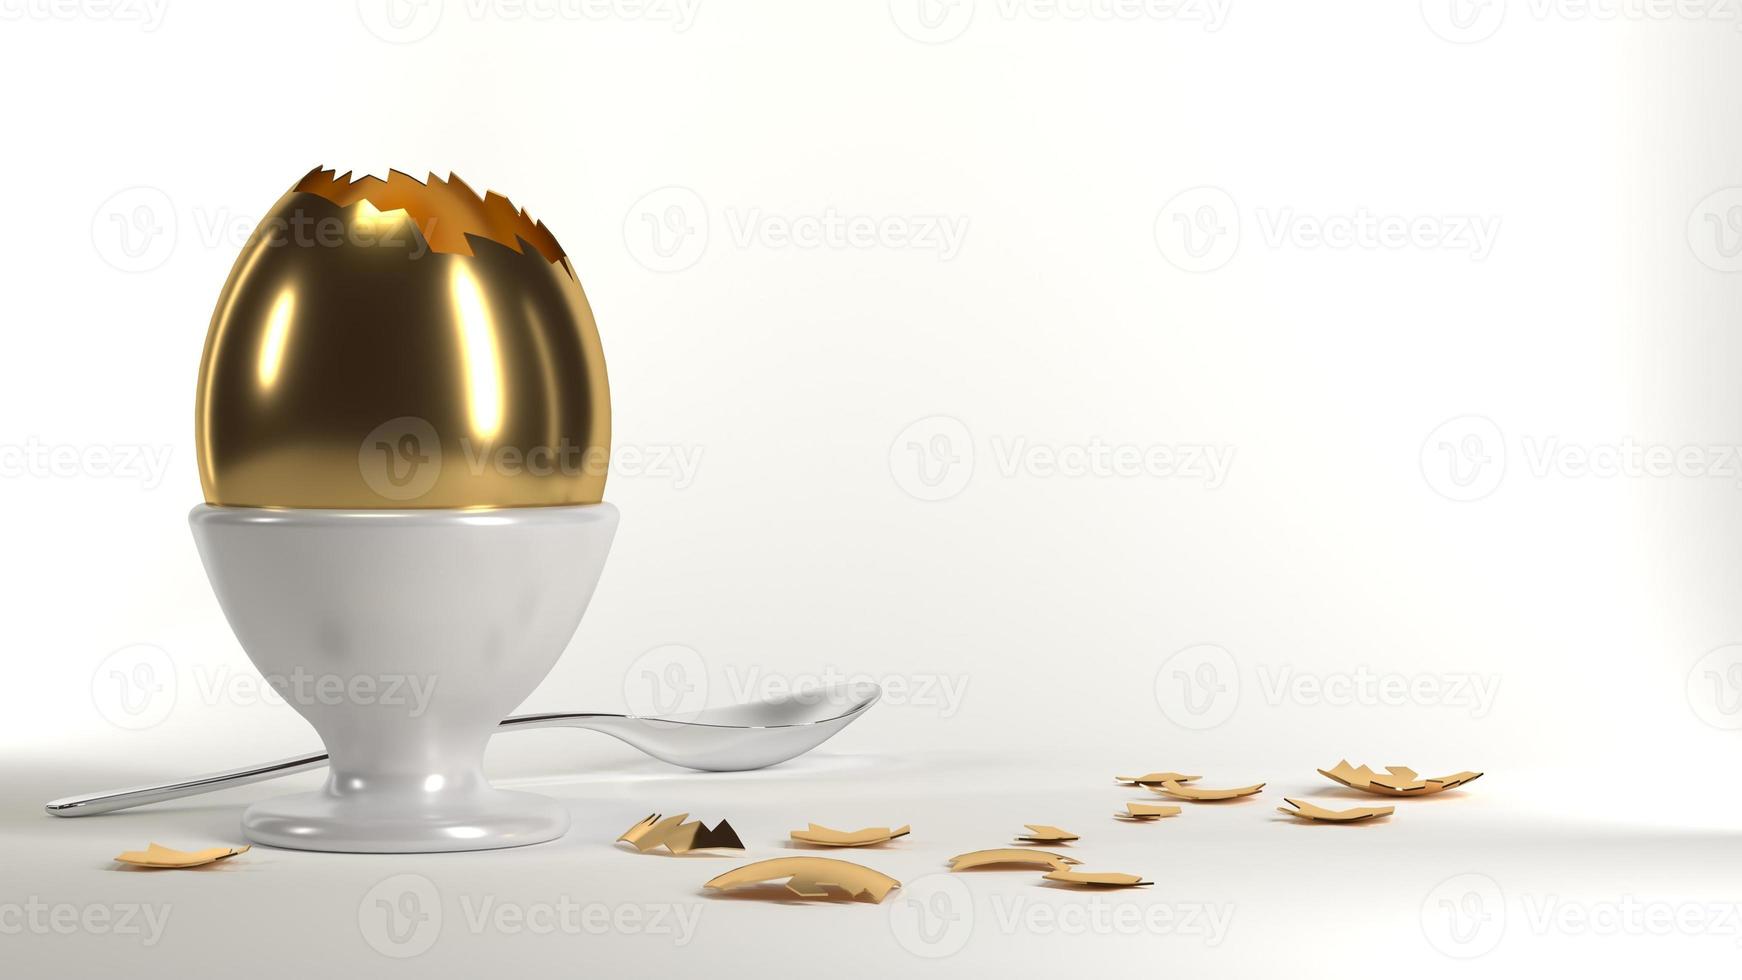 ovo de ouro na mesa foto